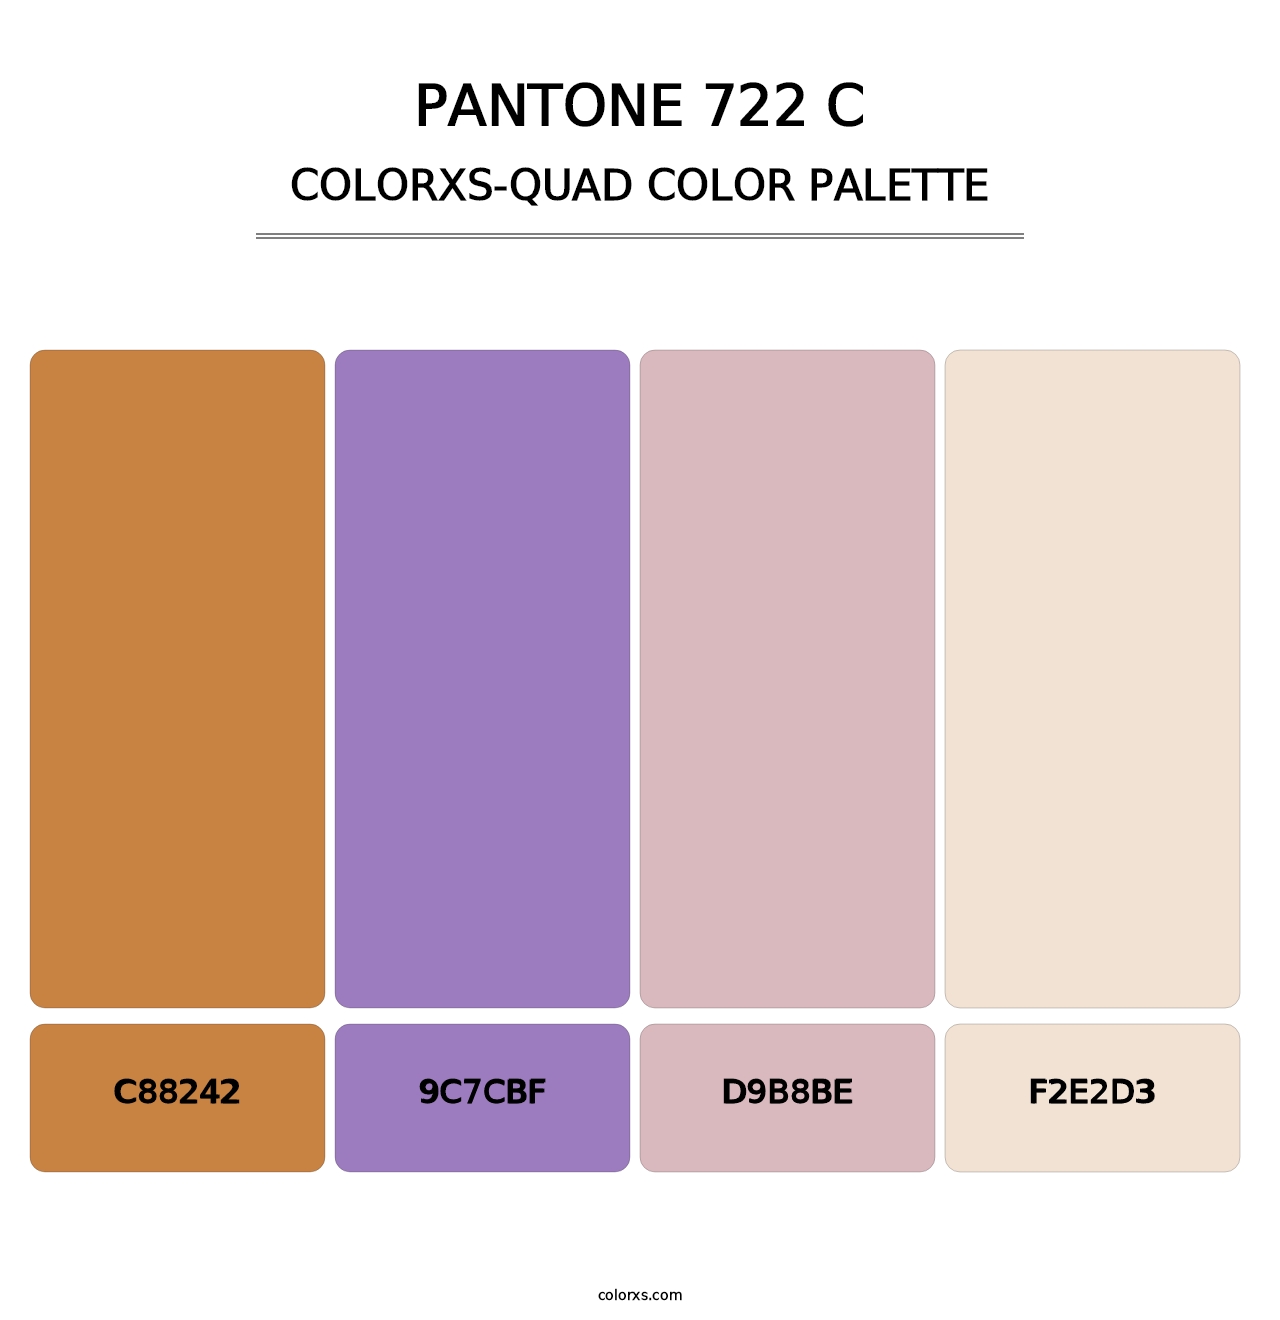 PANTONE 722 C - Colorxs Quad Palette